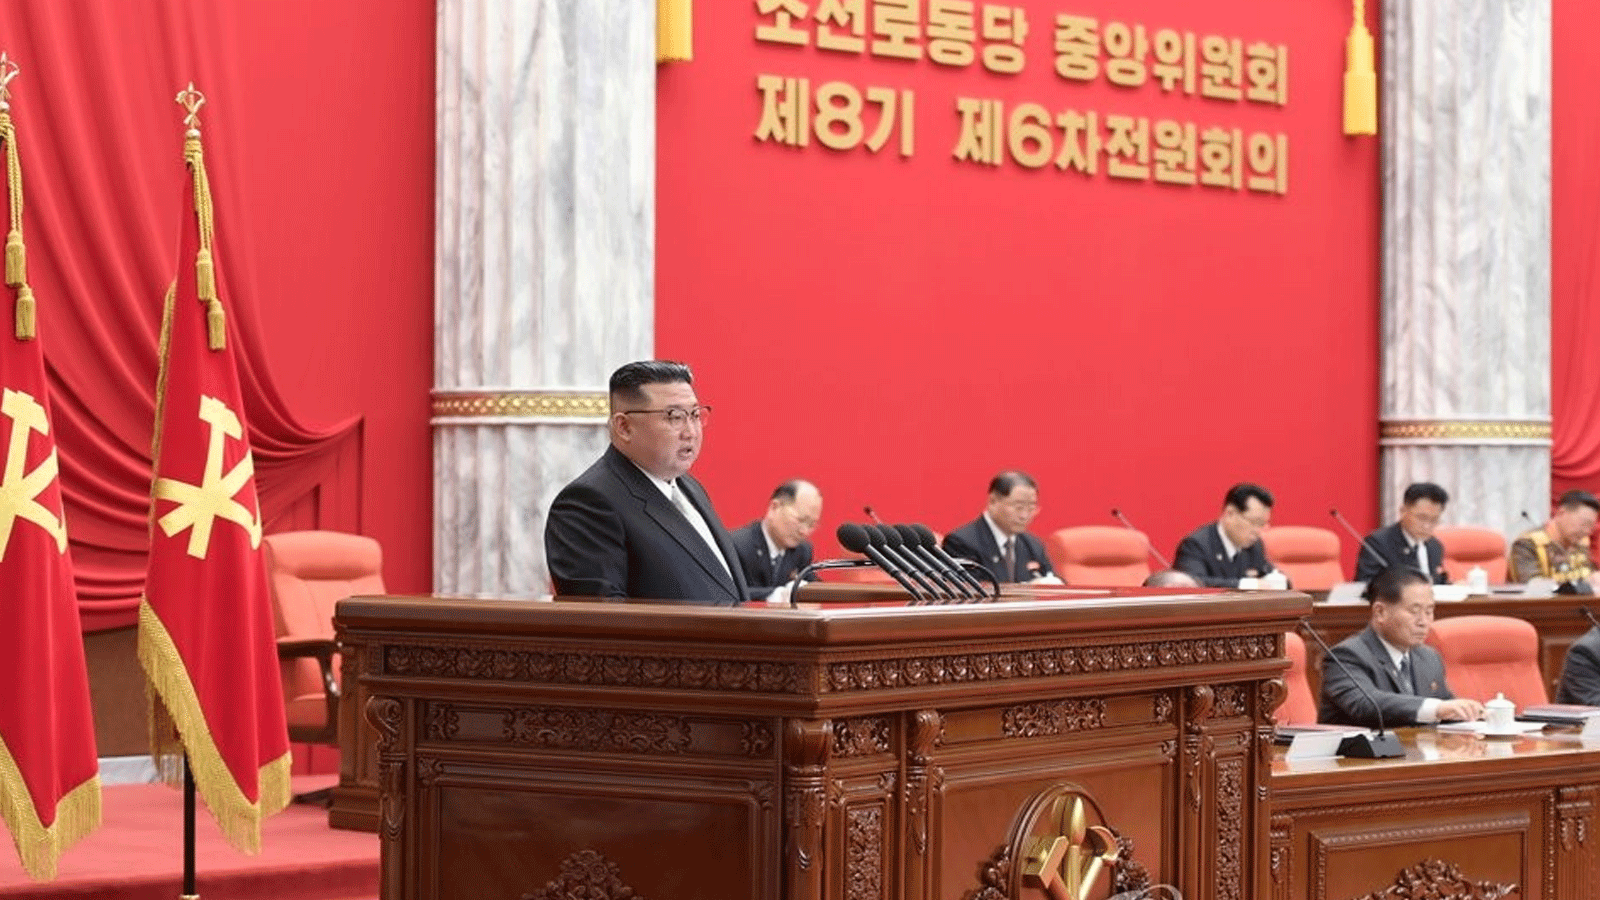 الزعيم الكوري كيم جونغ-أون يتحدث في كوريا الشمالية خلال الاجتماع الرئيسي للحزب الحاكم